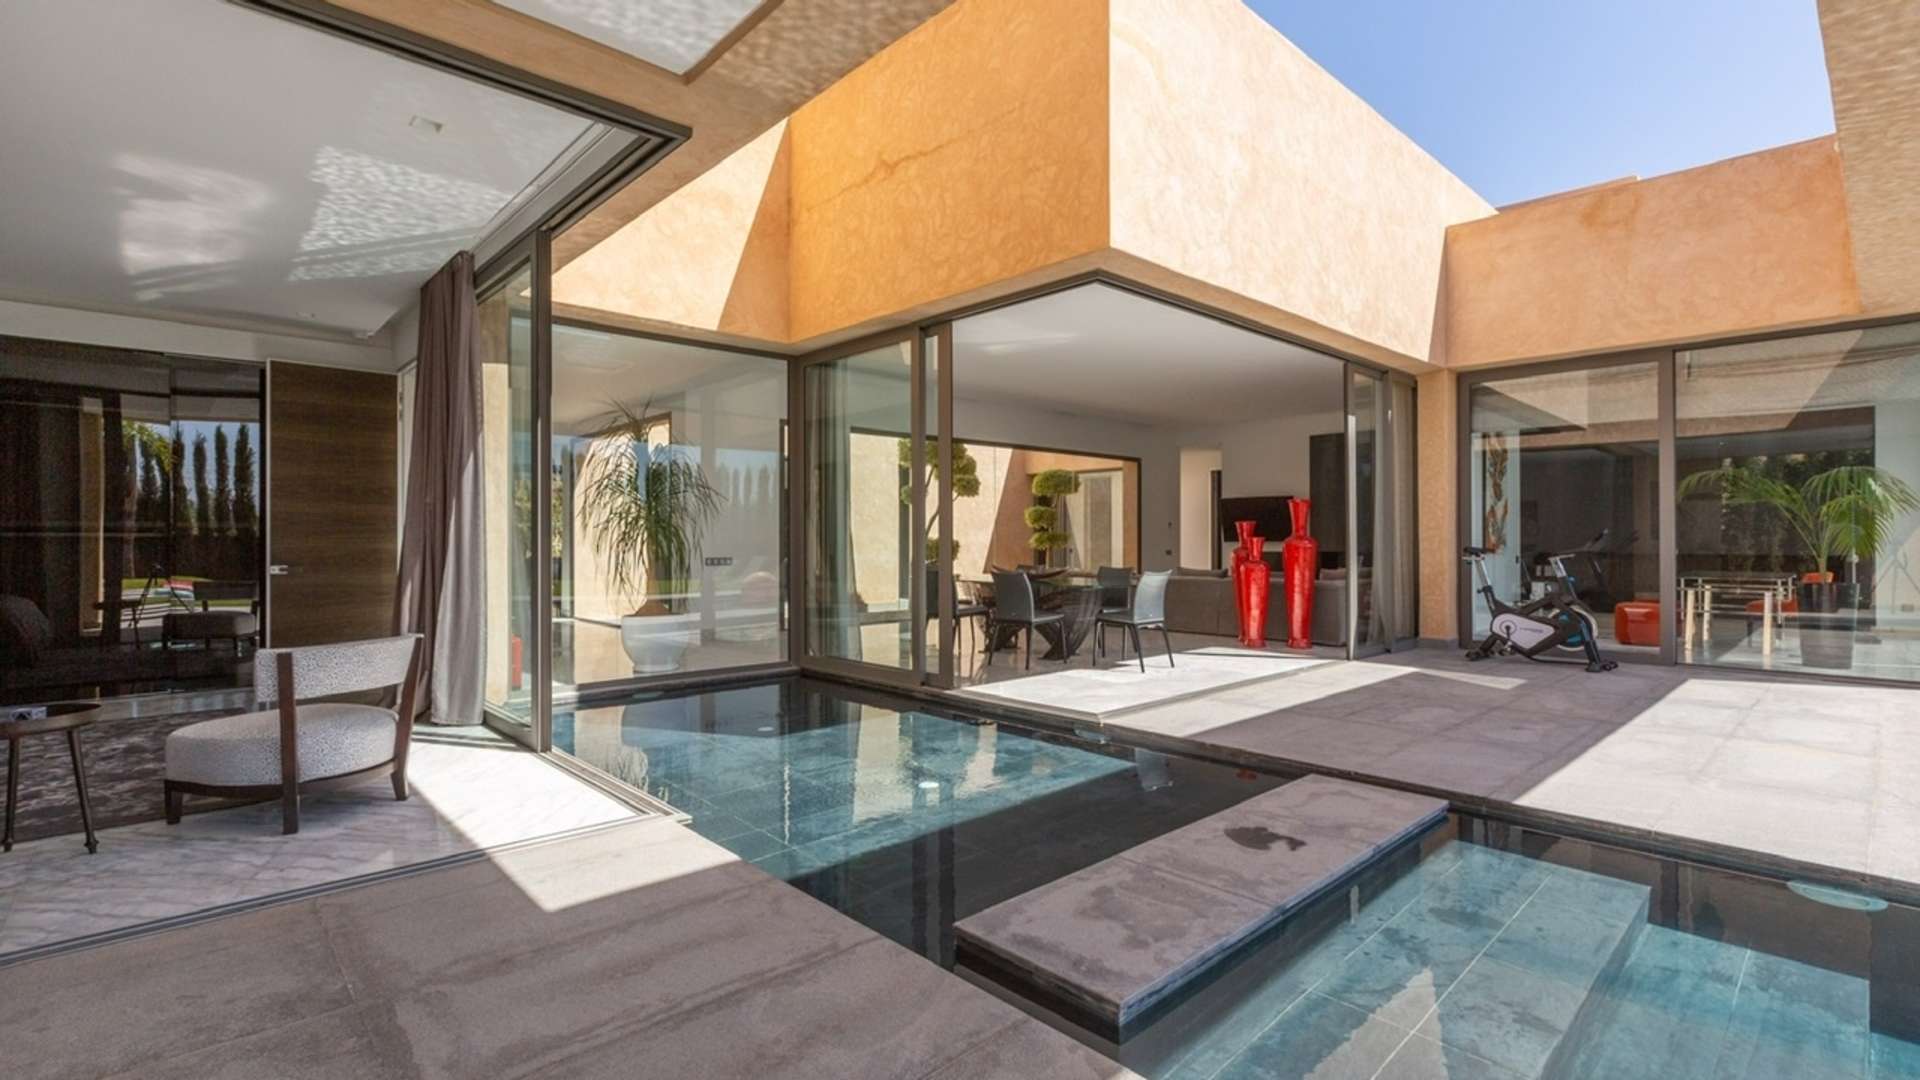 Vente,Villa,Somptueuse  villa moderne à vendre à Marrakech,Marrakech,Route de Fès